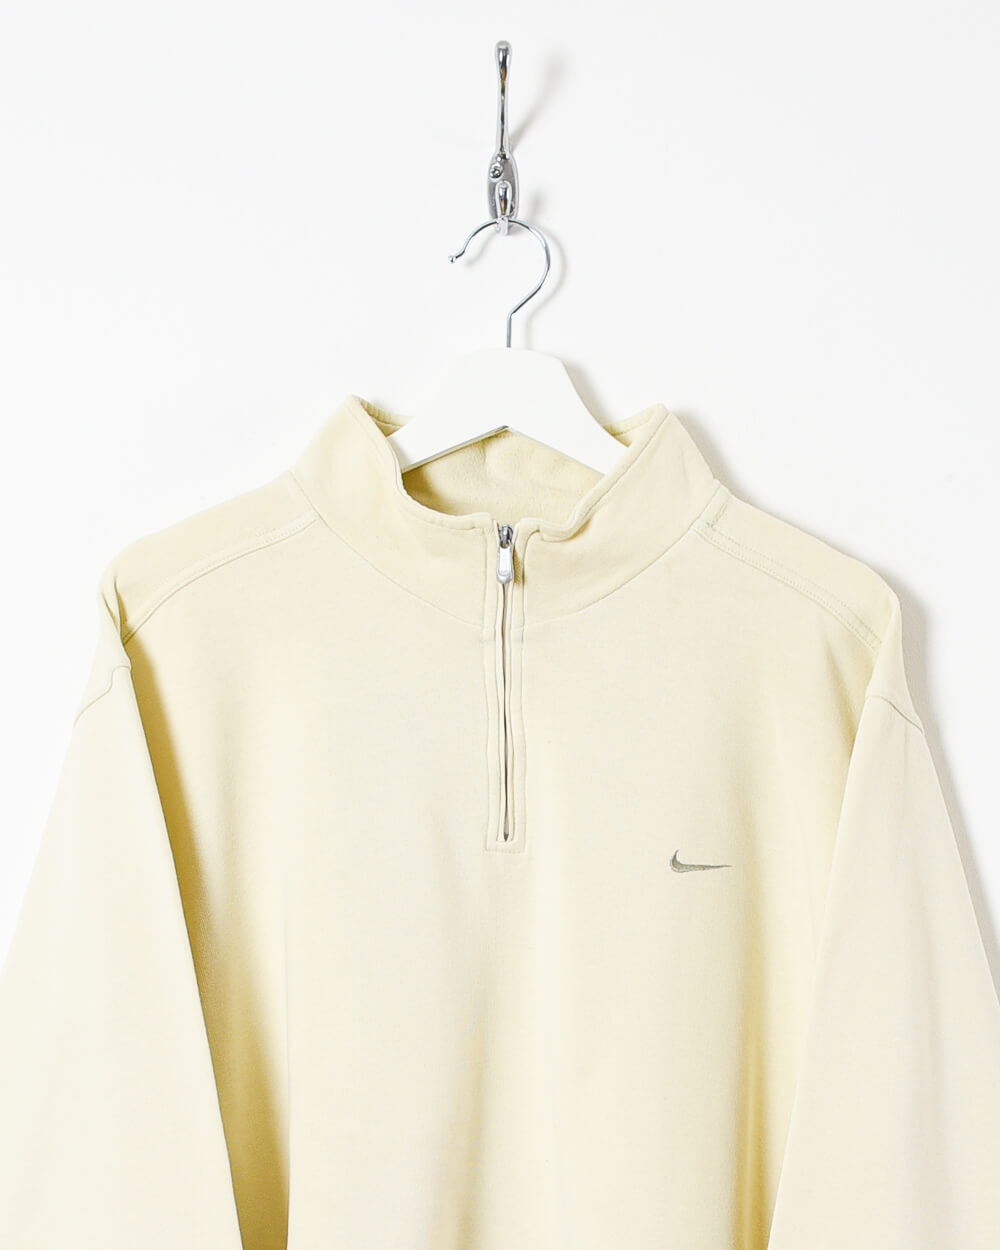 Neutral Nike 1/4 Zip Sweatshirt - Large